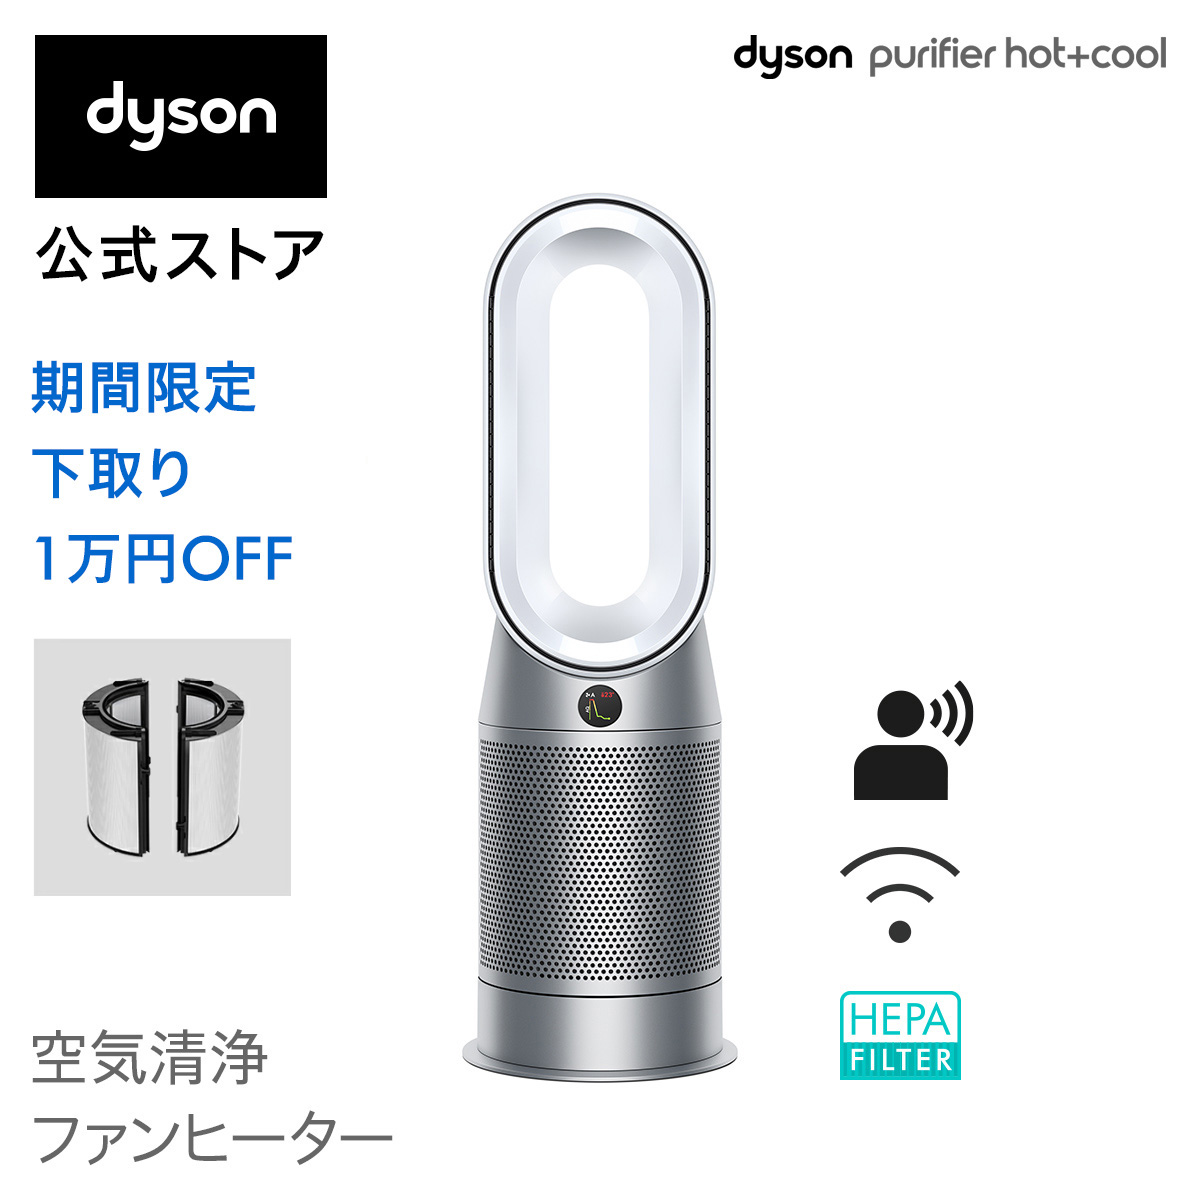 がダイソン Dyson - dyson pure hot+cool空気清浄HP04 WS Nの通販 by 